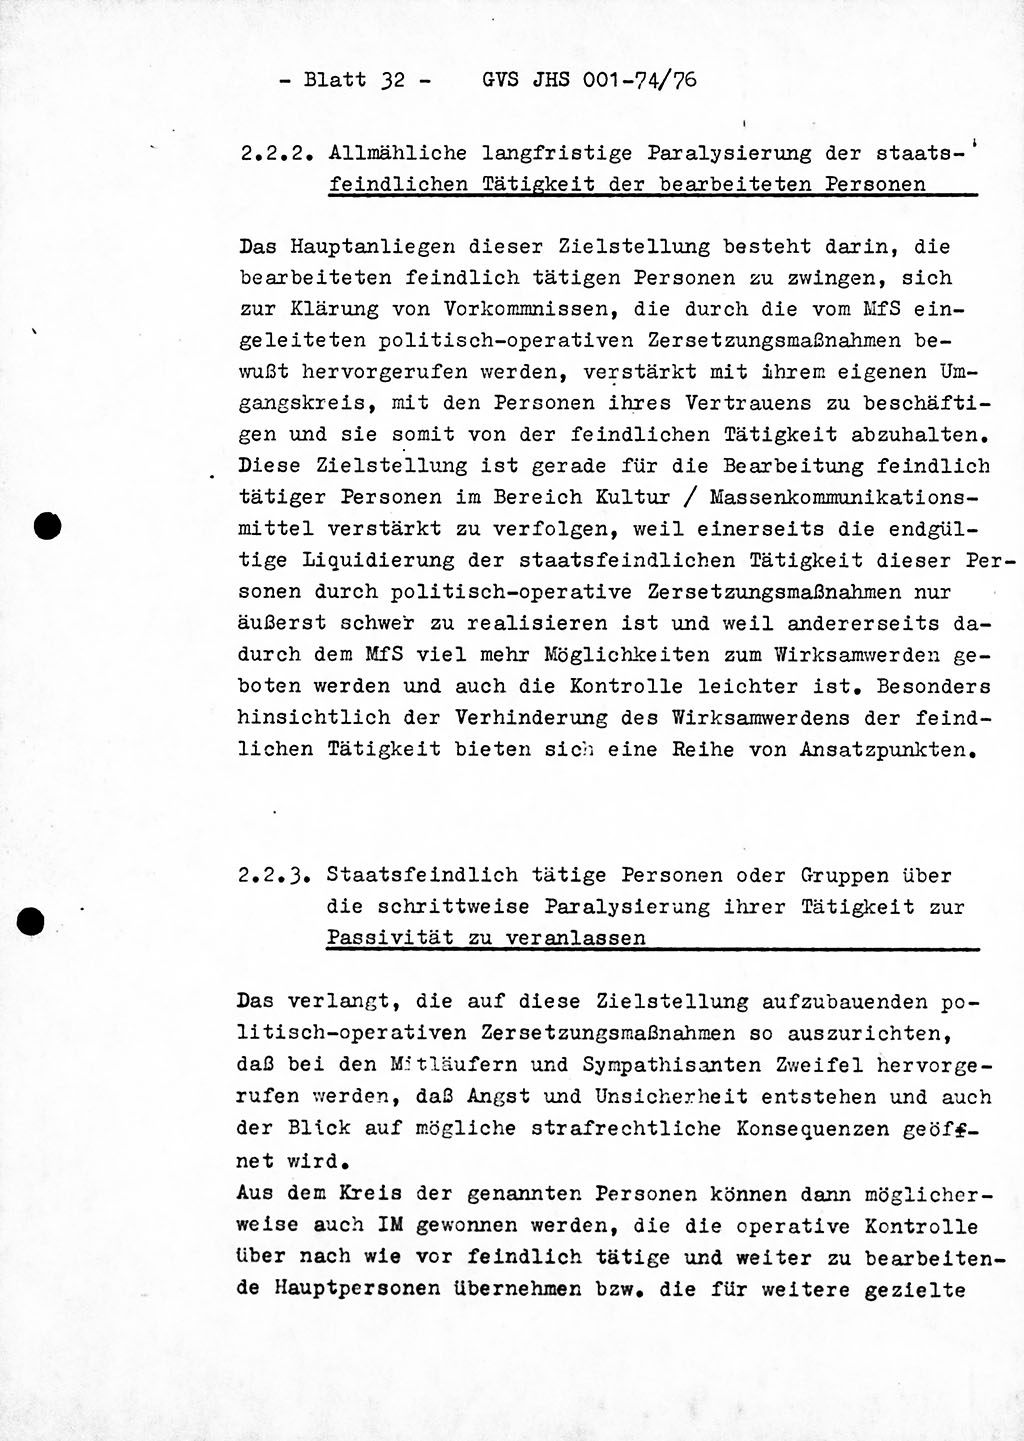 Diplomarbeit Hauptmann Joachim Tischendorf (HA ⅩⅩ), Ministerium für Staatssicherheit (MfS) der Deutschen Demokratischen Republik (DDR), Juristische Hochschule (JHS), Geheime Verschlußsache (GVS) 001-74/76, Potsdam 1976, Seite 32 (Dipl.-Arb. MfS DDR JHS GVS 001-74/76 1976, S. 32)